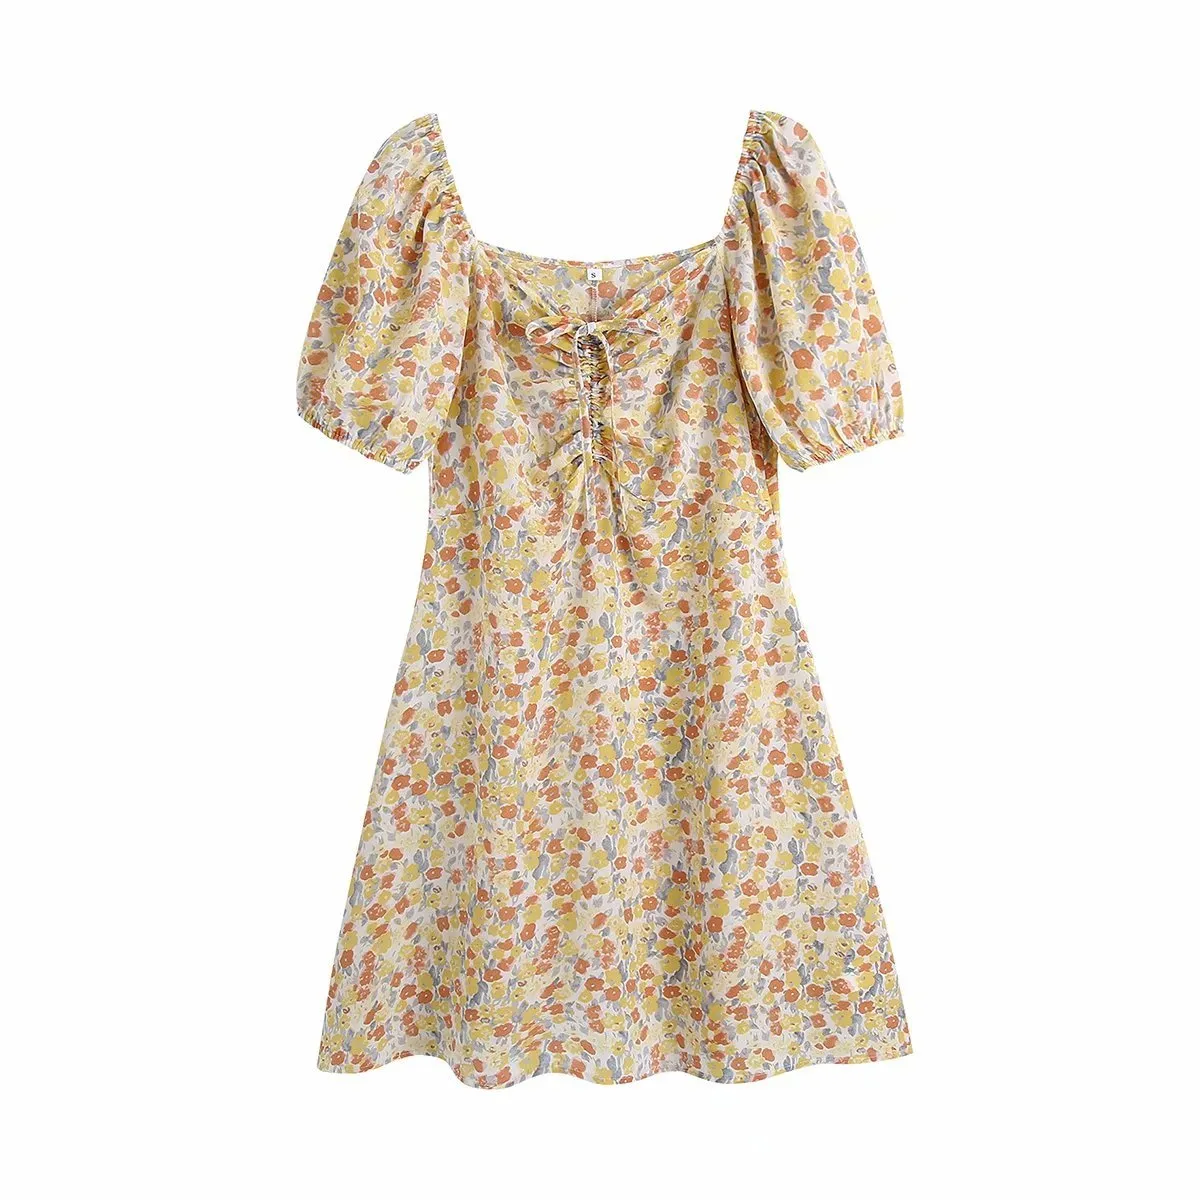 Vintage Square Neck Kurzarm Frauen Blumen Kleid Mode Taille Puff Sleeve Chic Weibliche Mini Kleider 210507